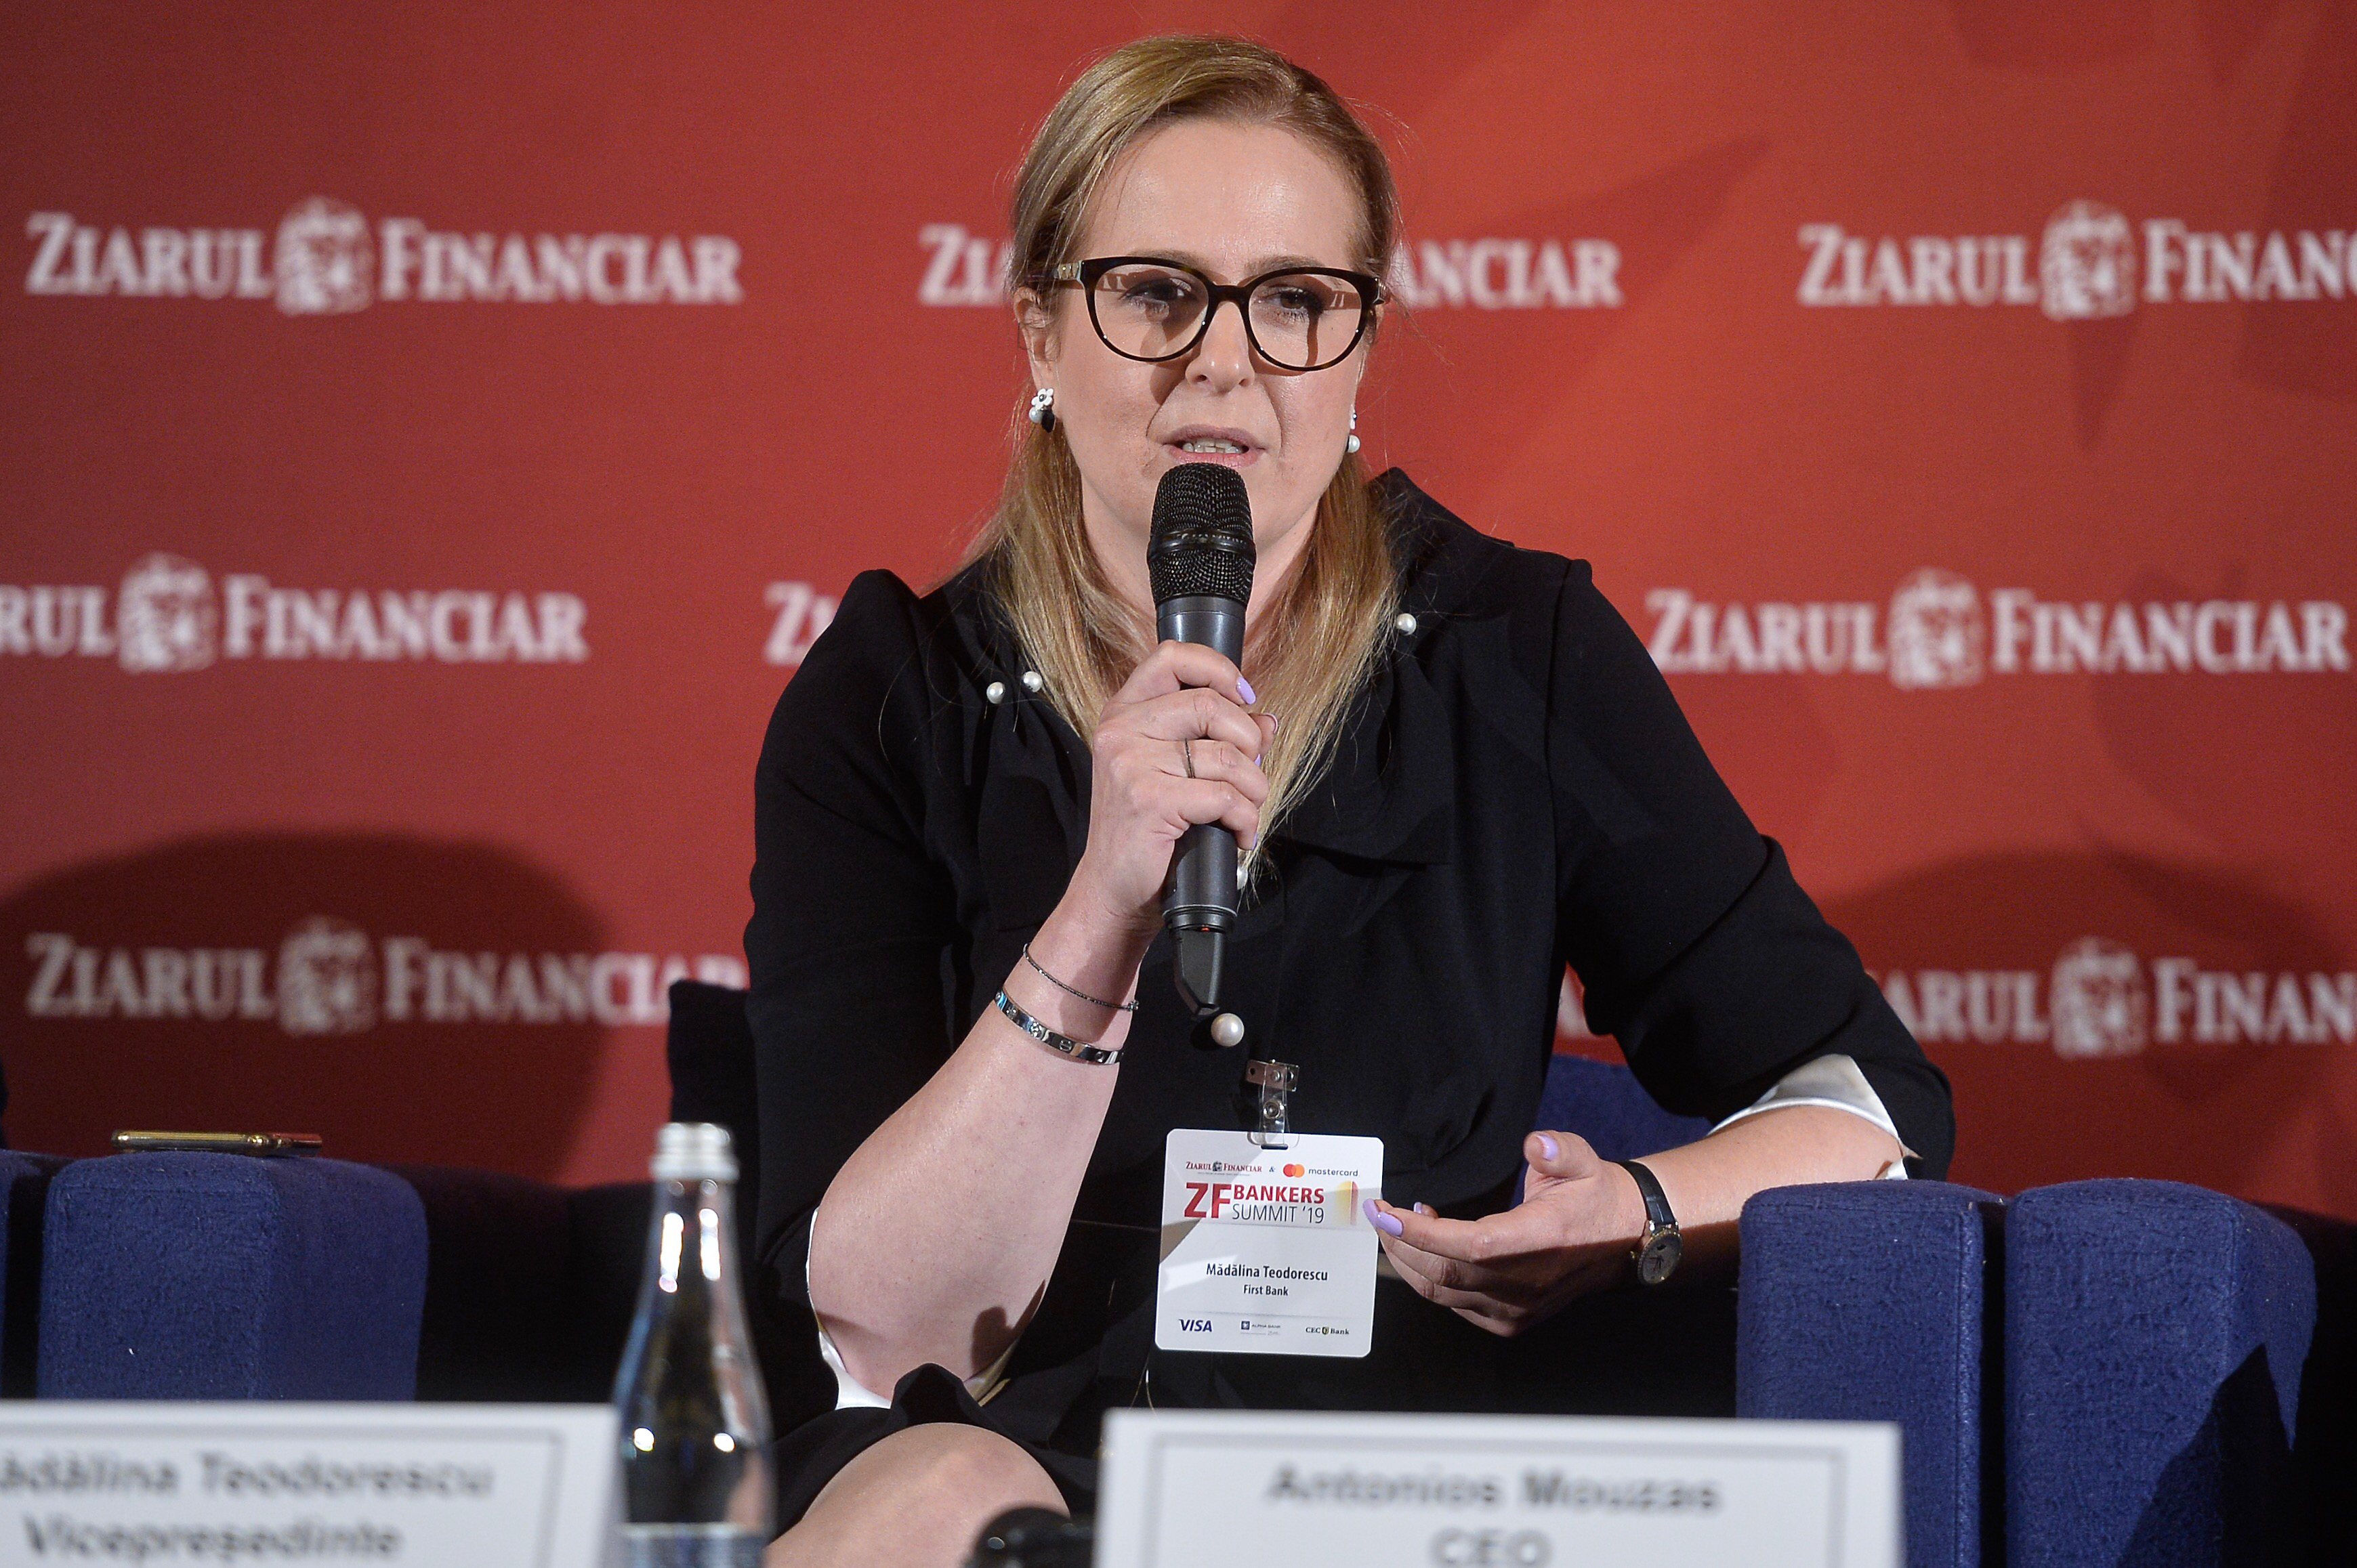 ZF Bankers Summit ’20. Mădălina Teodorescu, vicepreşedinte First Bank: Tehnologia este foarte importantă pentru noi. Suntem foarte concentraţi pe creşterea băncii. Suntem pregătiţi şi deschişi la orice oportunităţi de achiziţii apar